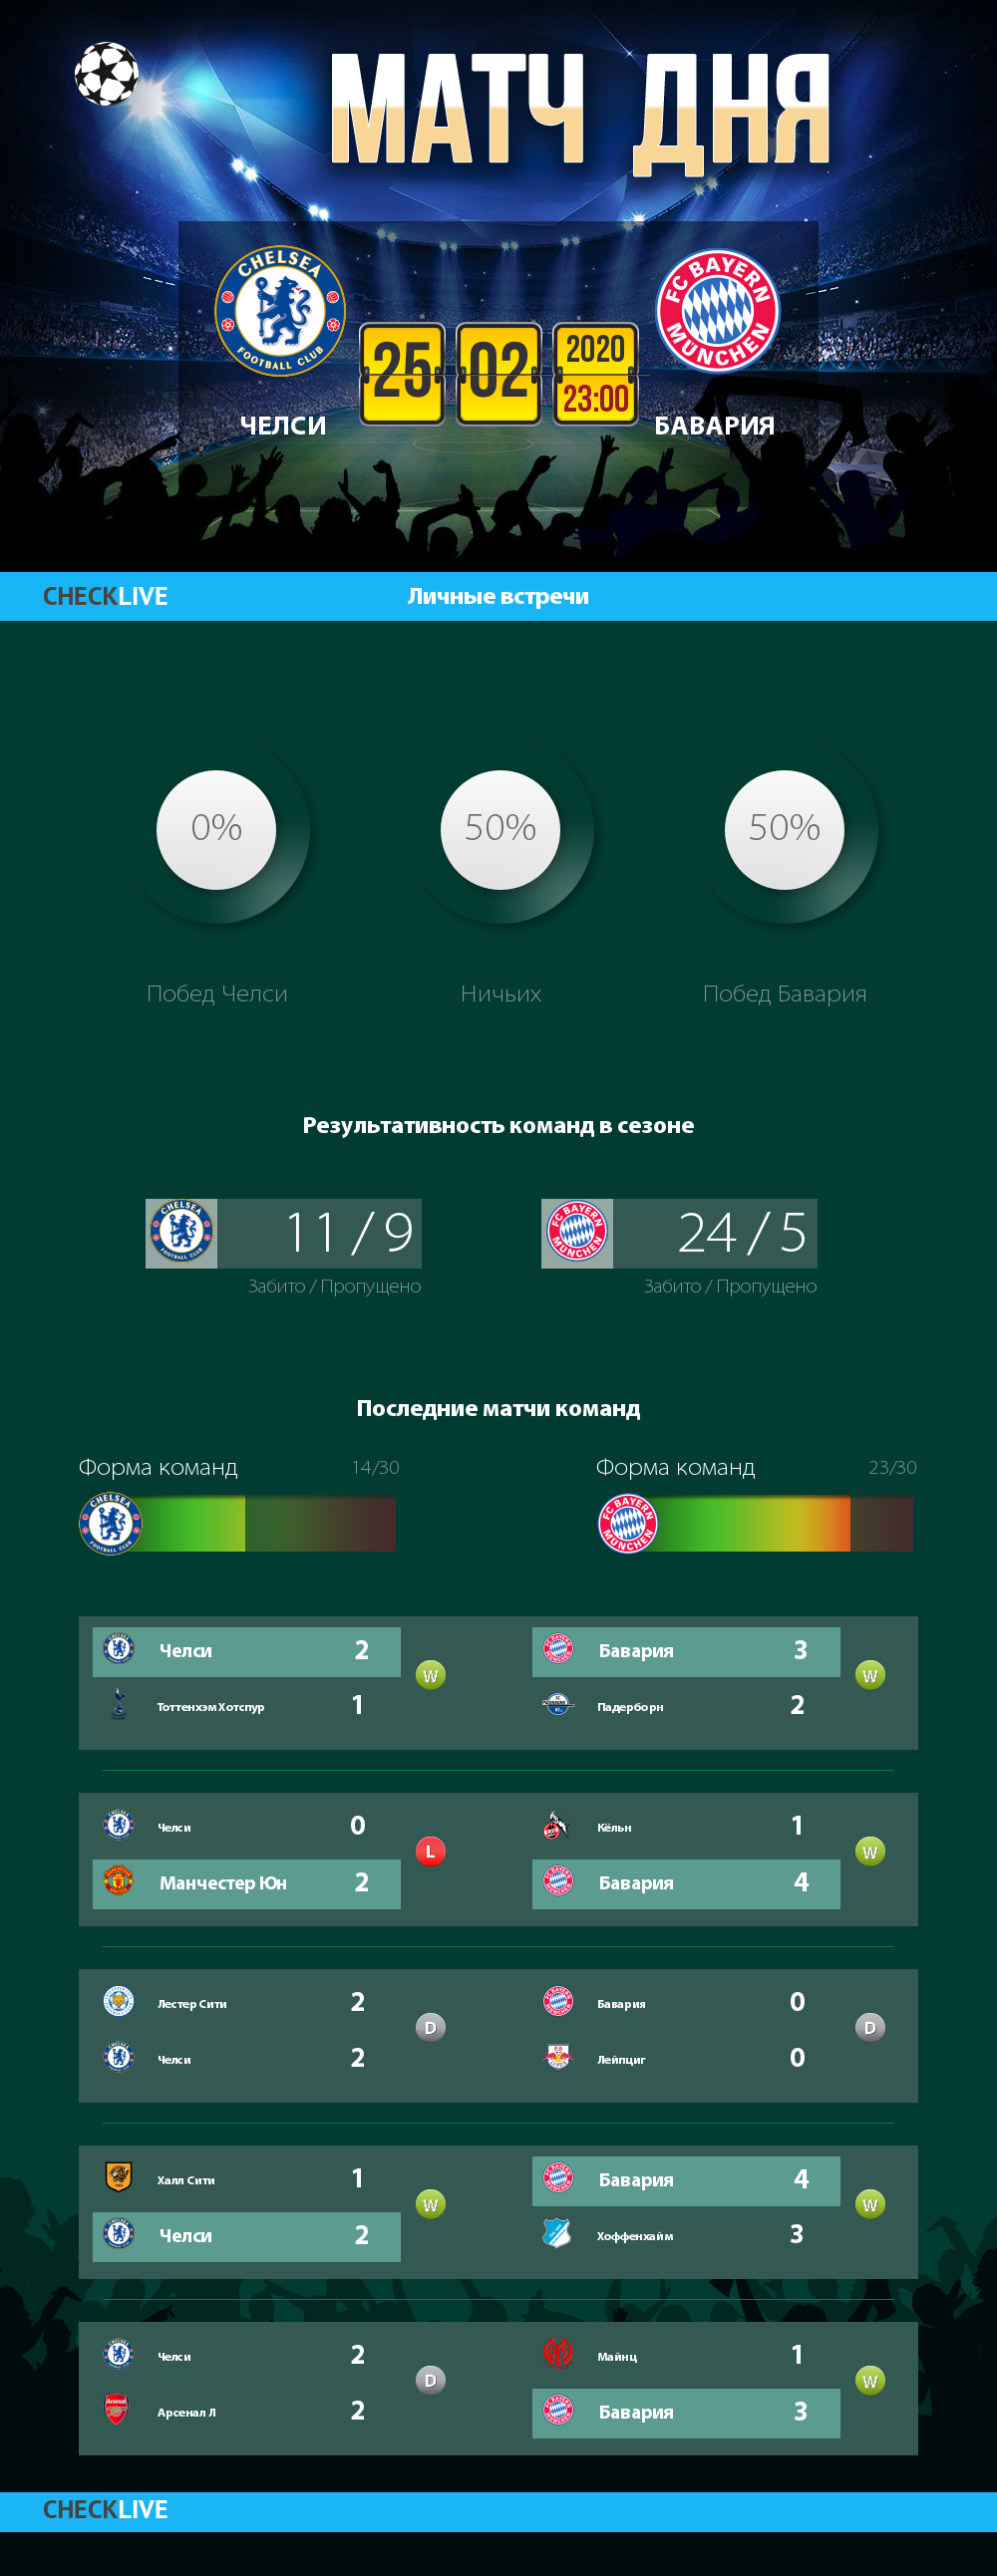 Инфографика Челси и Бавария матч дня 25.02.2020